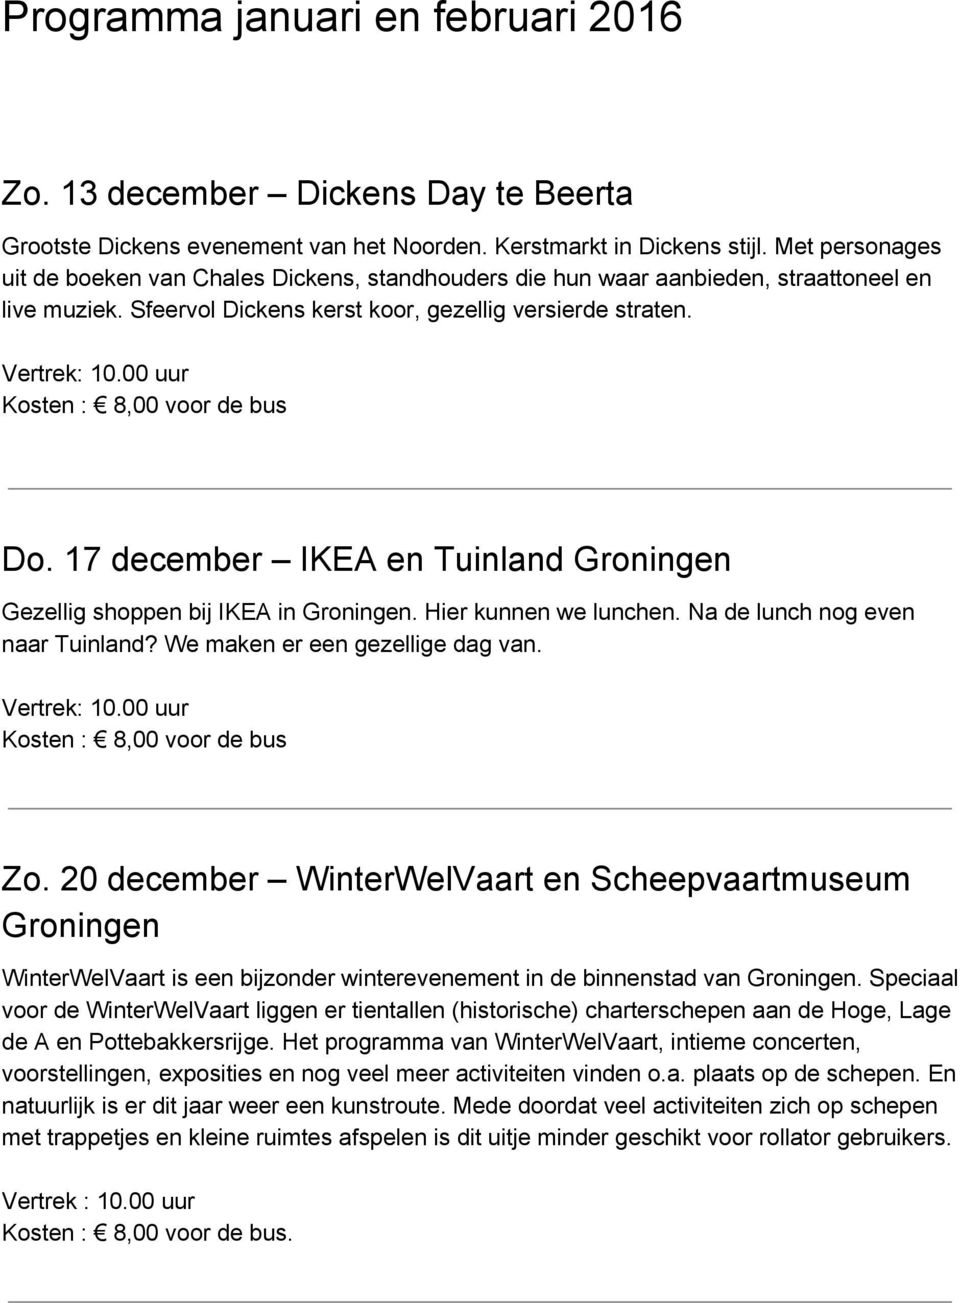 Kosten : 8,00 voor de bus Do. 17 december IKEA en Tuinland Groningen Gezellig shoppen bij IKEA in Groningen. Hier kunnen we lunchen. Na de lunch nog even naar Tuinland?